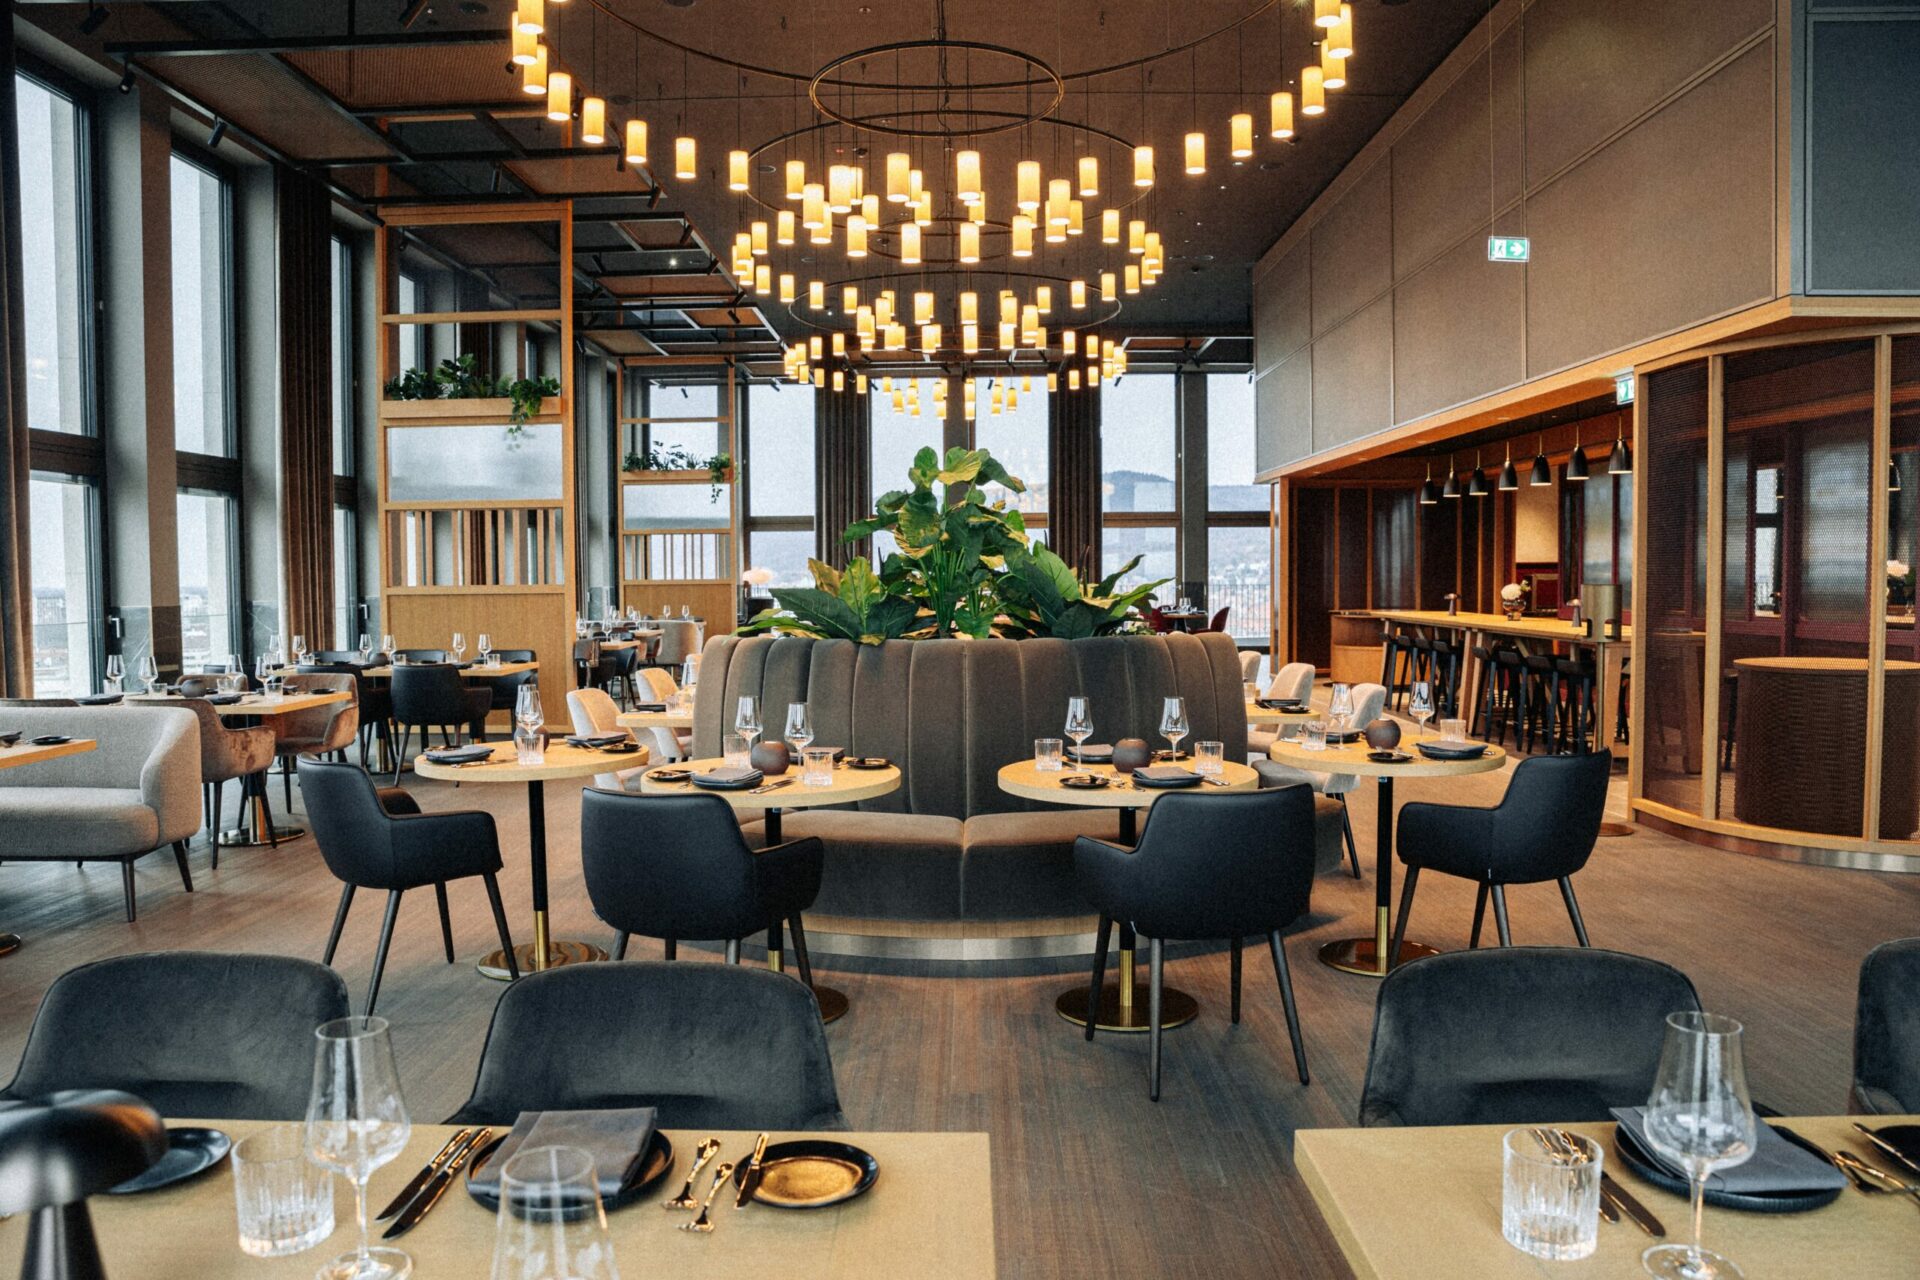 15 High Restaurant mit gedeckten Tischen und Stühlen in einem Raum mit vielen Fenstern mit Blick auf die Umgebung